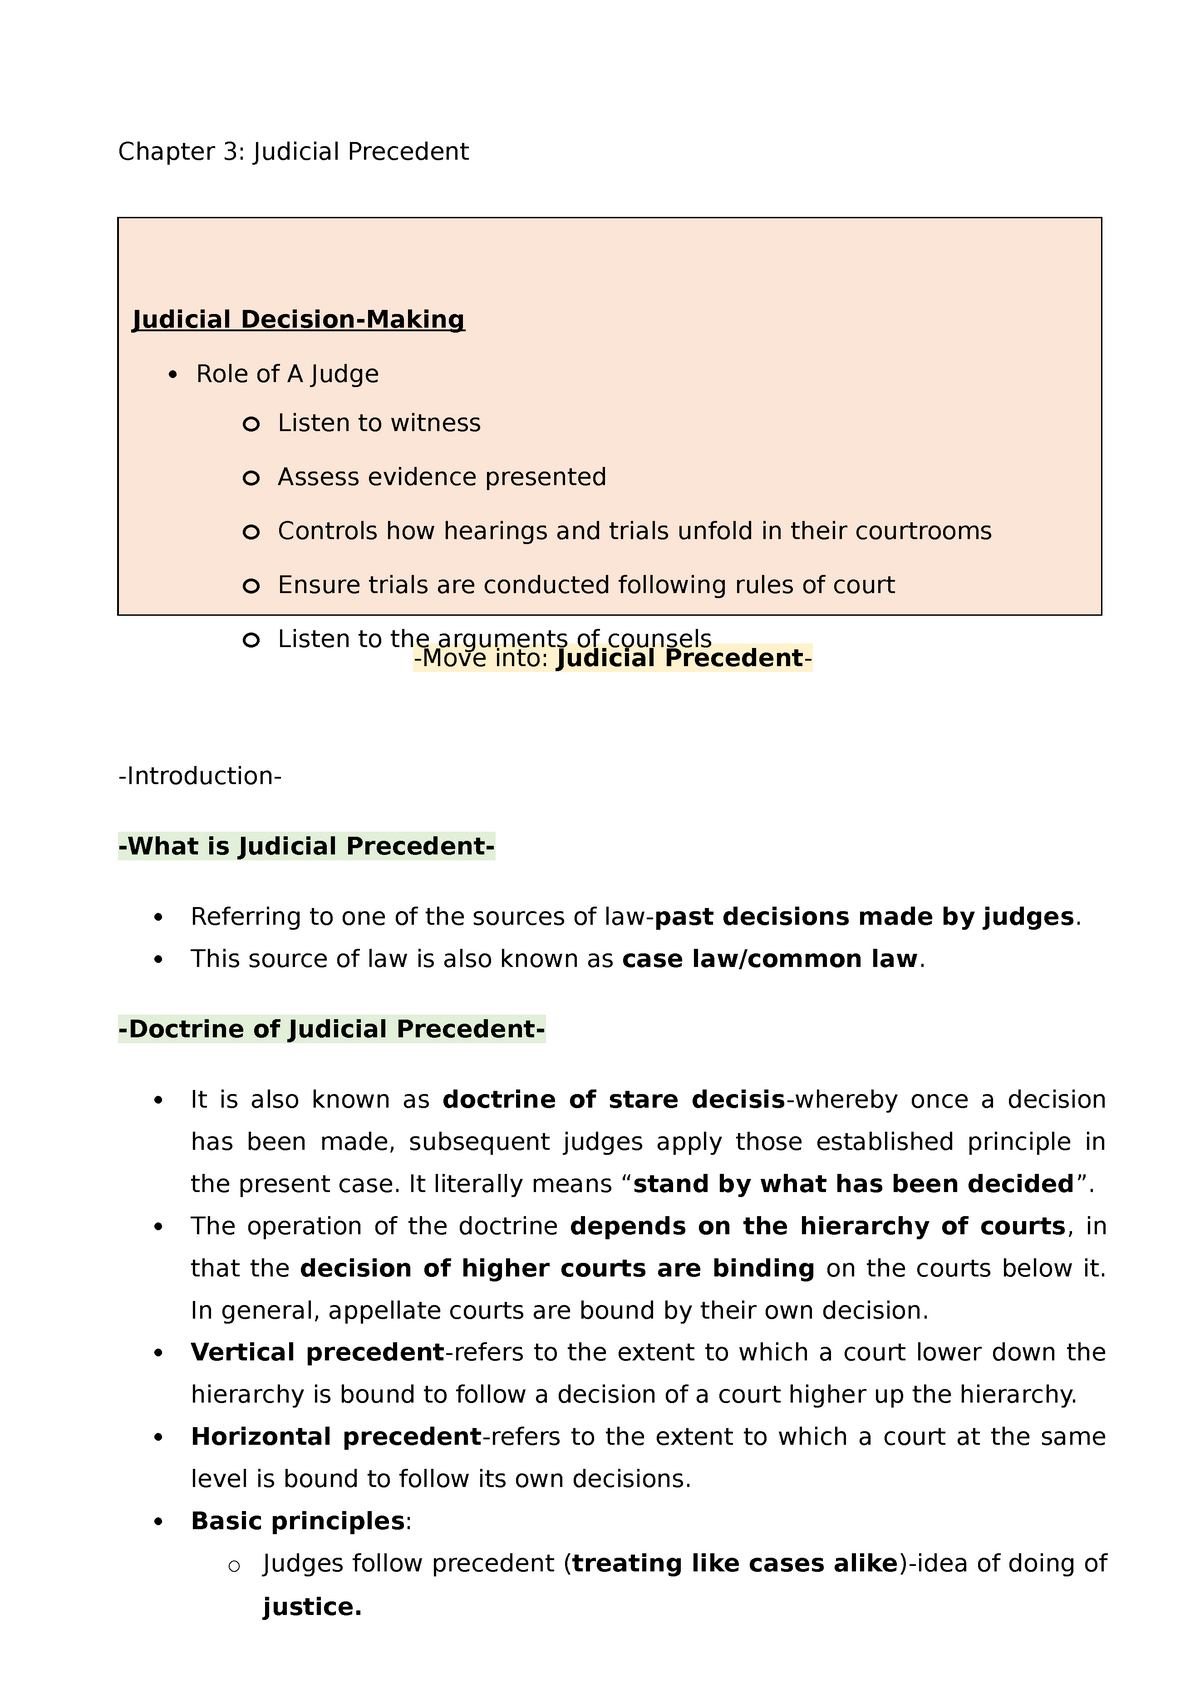 judicial precedent essay uk